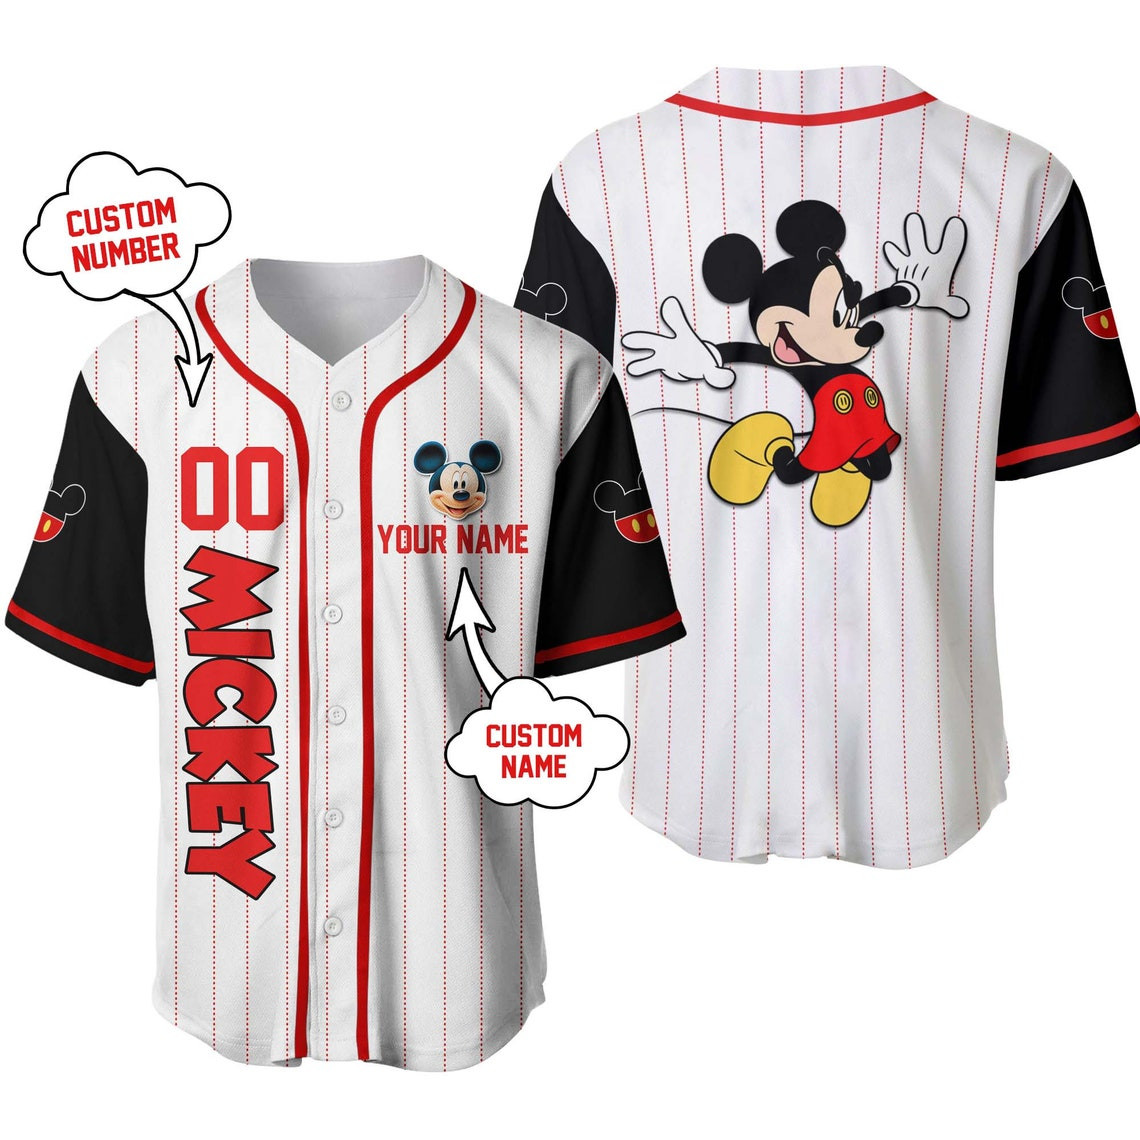 Mickey Mouse Personalized Baseball Jersey Disney Cartoon Custom Baseball Jersey Personalized Shirts Men Women Kids